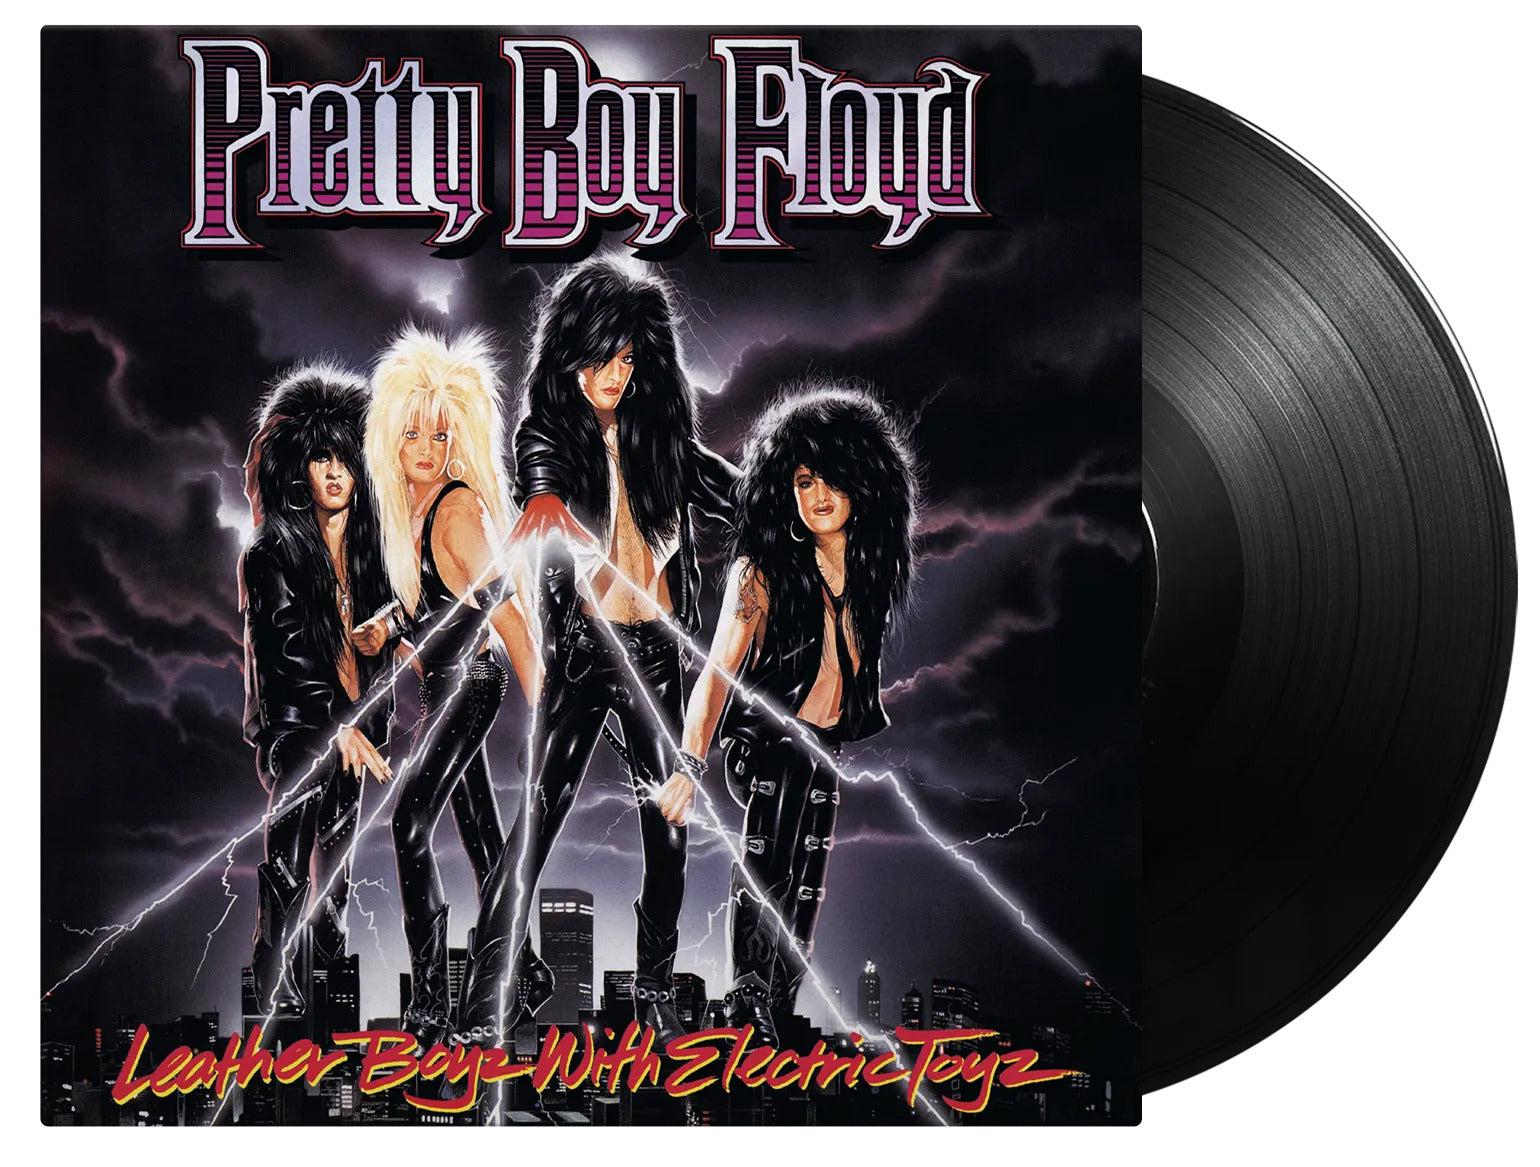 Pretty Boy Floyd "Leather Boyz With Electric Toyz" 180g Black Vinyl - PRE-ORDER